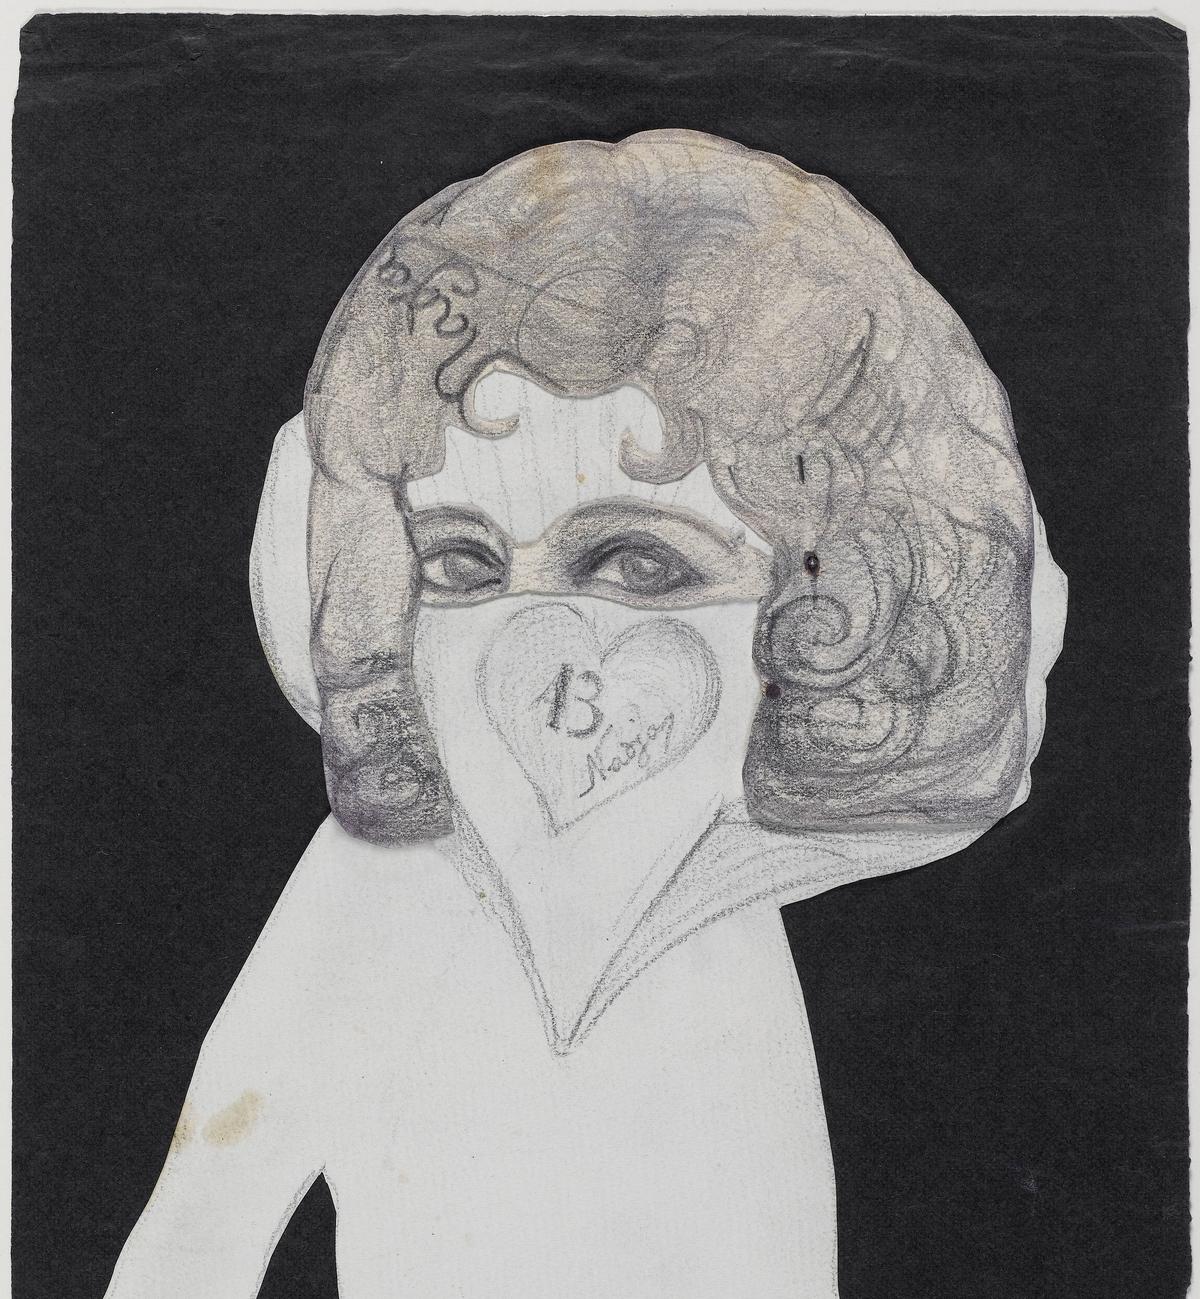 Dessin de Léona Delcourt (1902-1941), à qui André Breton donne le nom de Nadja dans son récit. © Centre Pompidou, musée national d’Art moderne